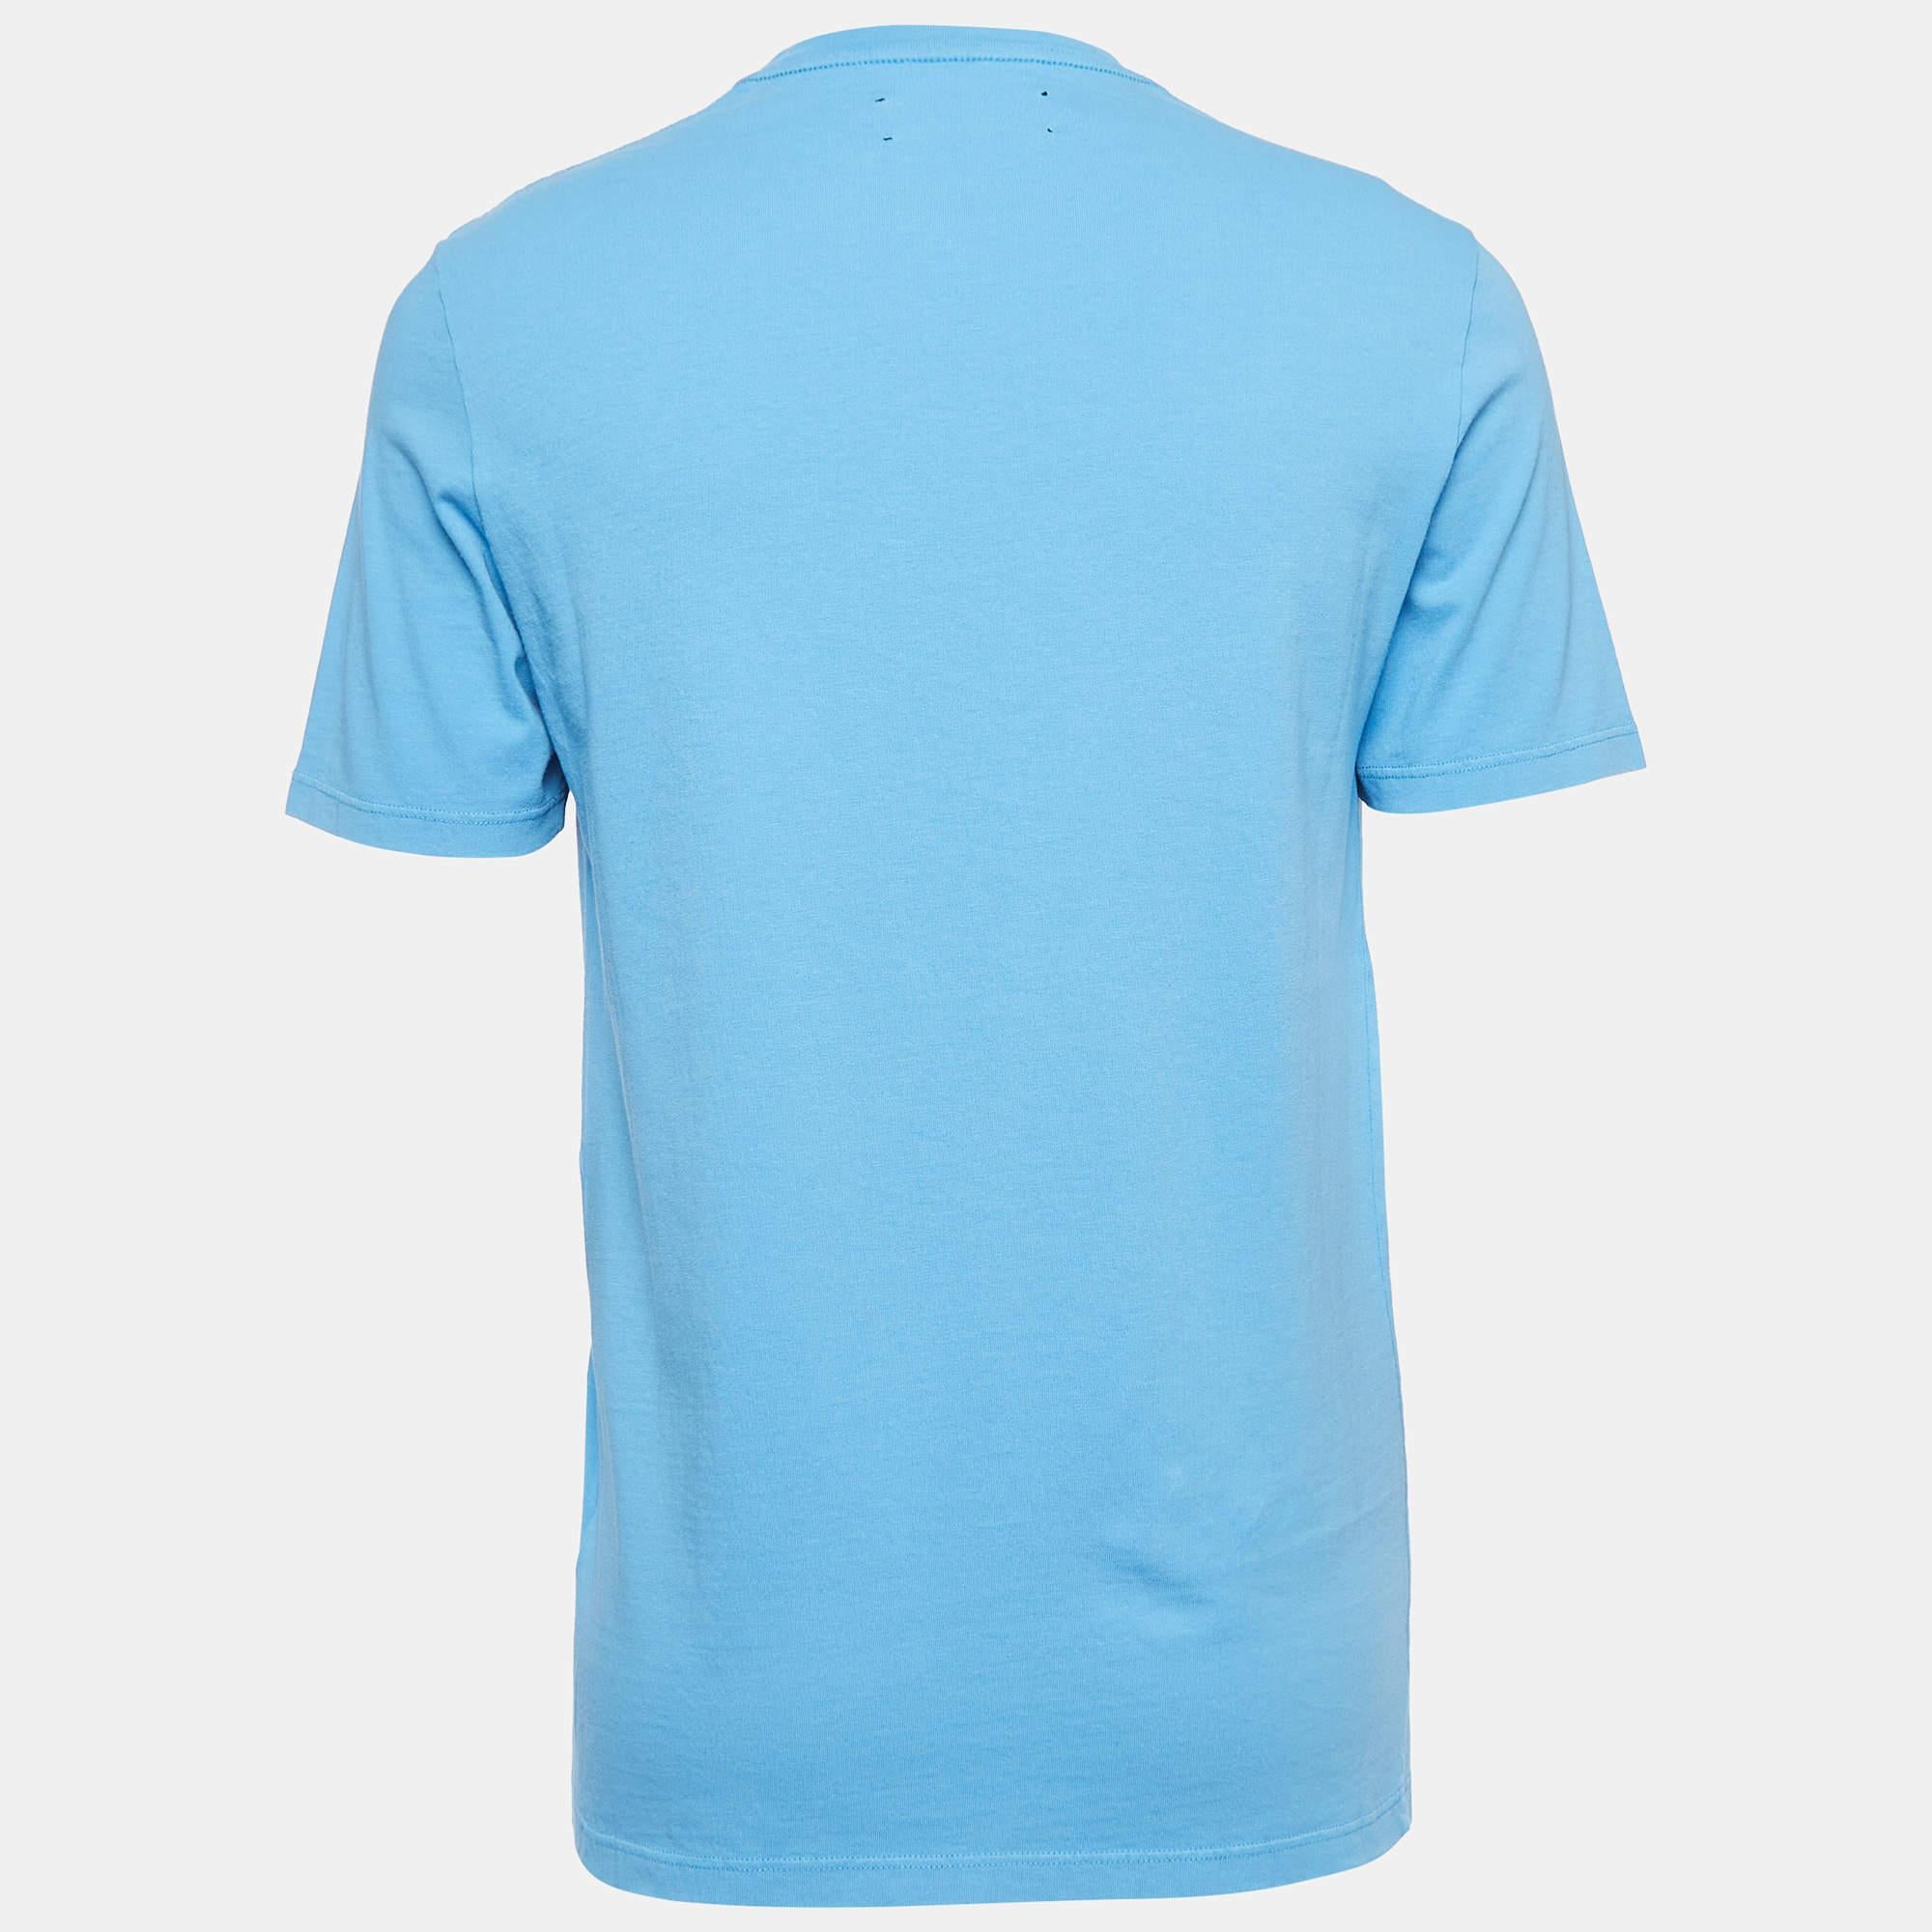 Le t-shirt Amiri est un essentiel de la garde-robe, à la fois élégant et confortable. Confectionné en coton de haute qualité, il présente un imprimé bleu unique. Avec ses demi-manches, cette chemise allie sans effort mode et confort pour un look